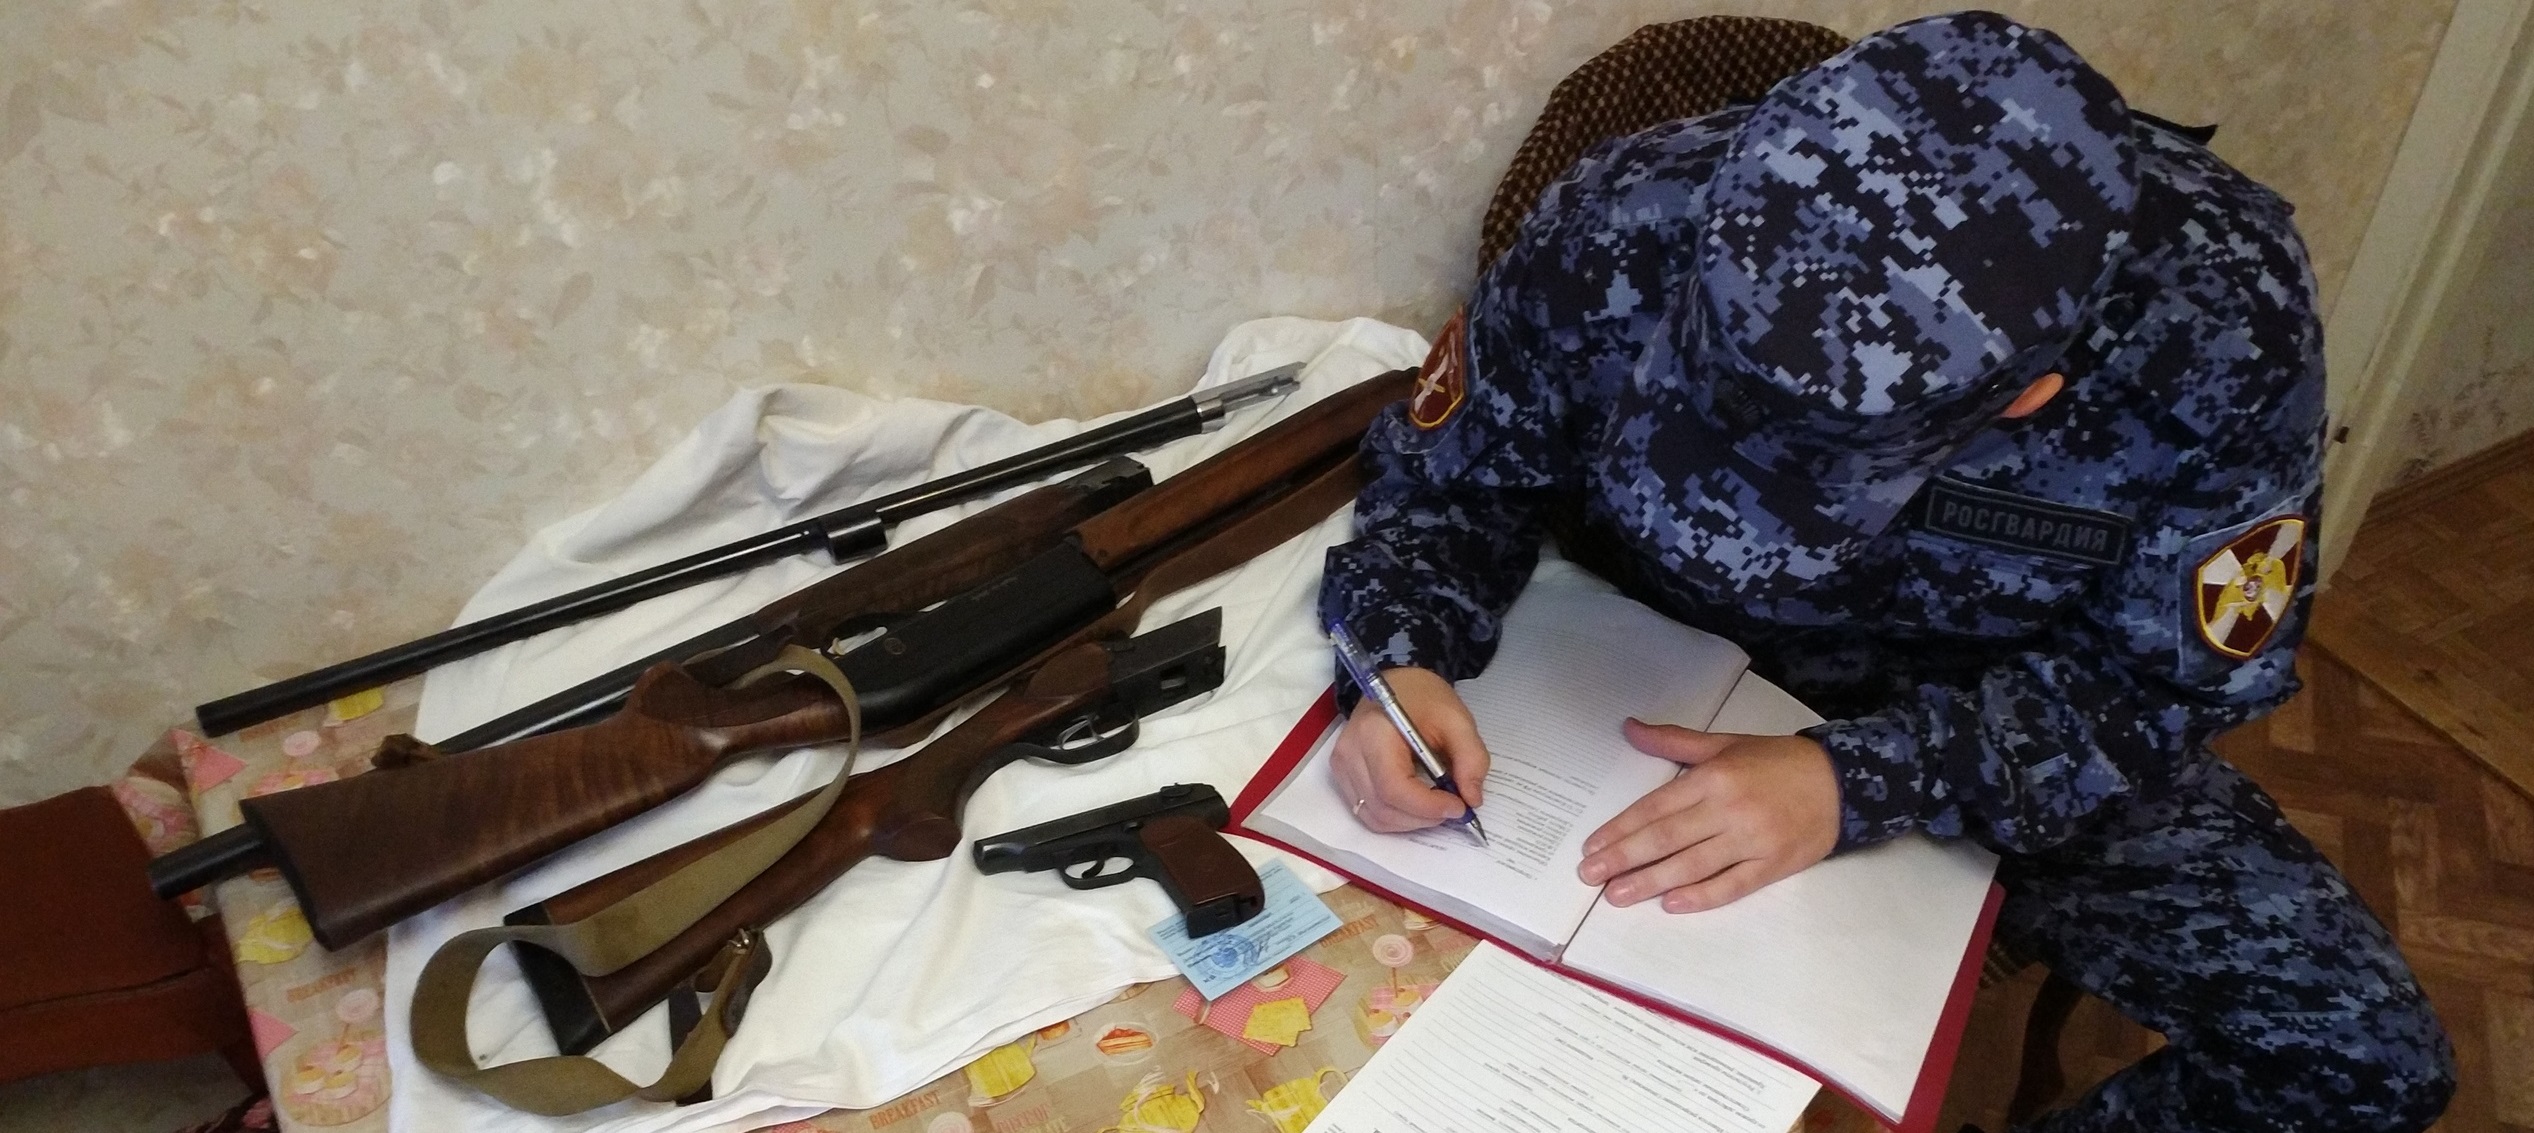 Полицейский из Забайкалья продавал изъятое оружие. Его будут судить